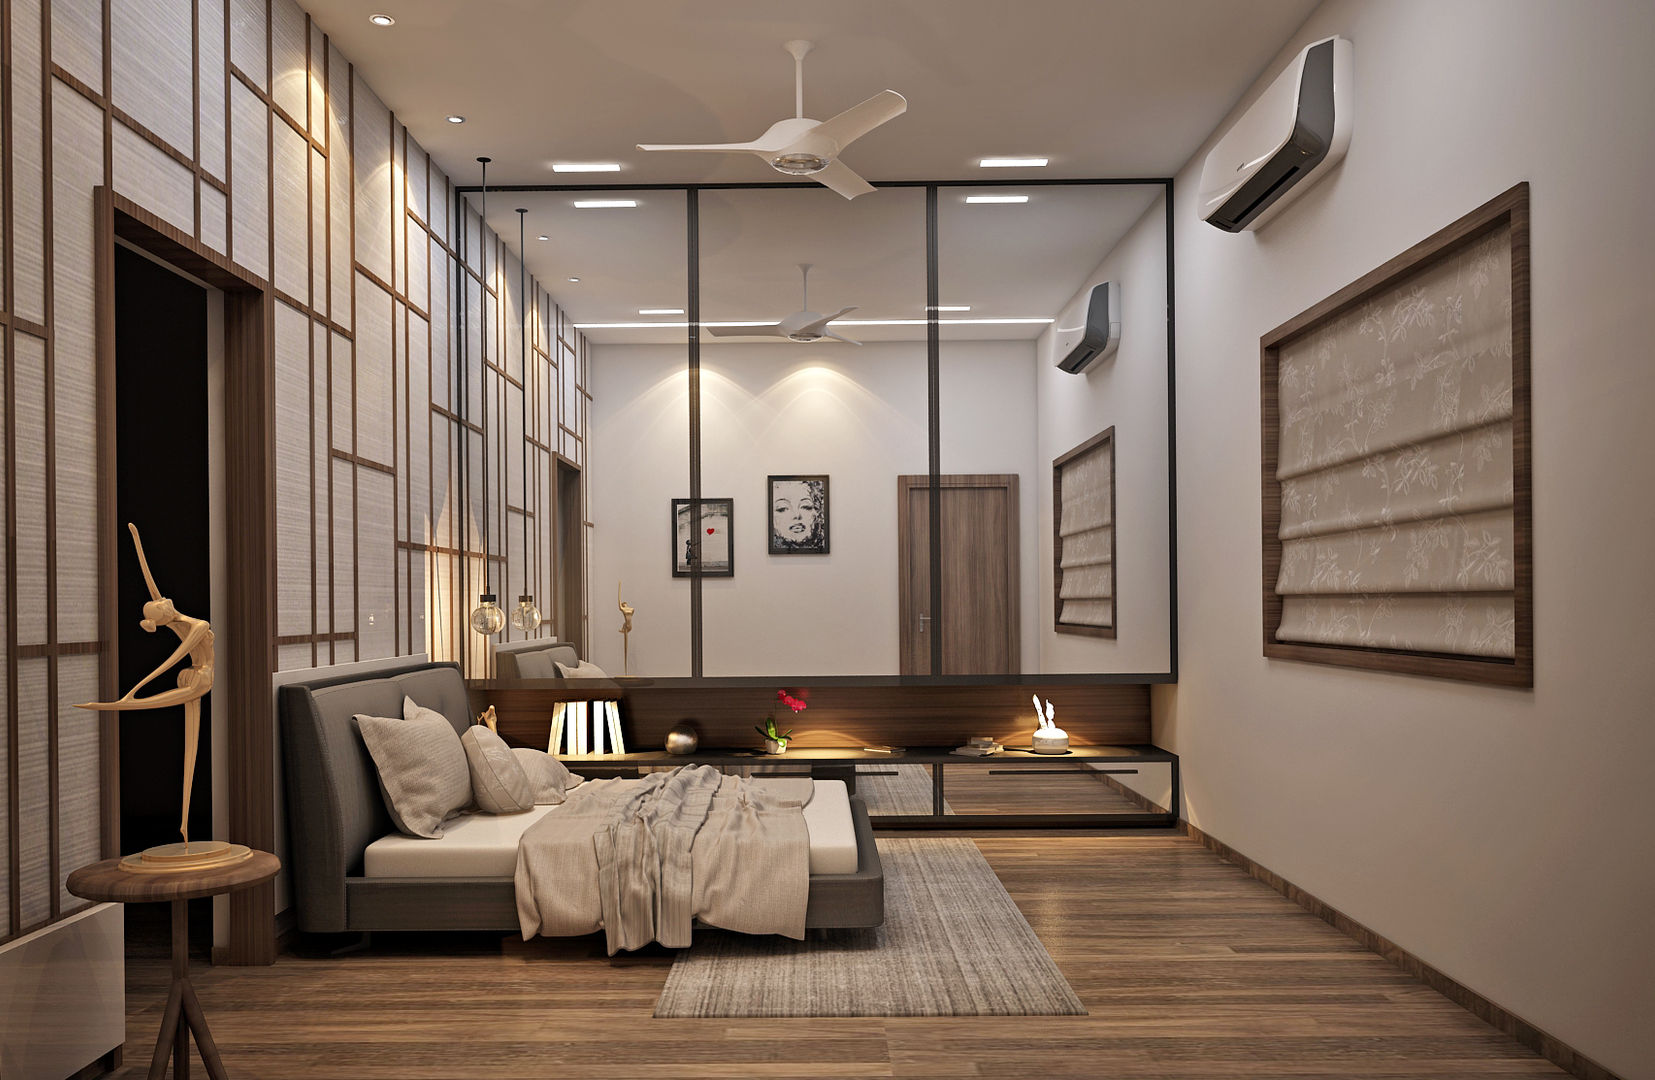 Home Interiors Design, Inside Element Inside Element Moderne slaapkamers